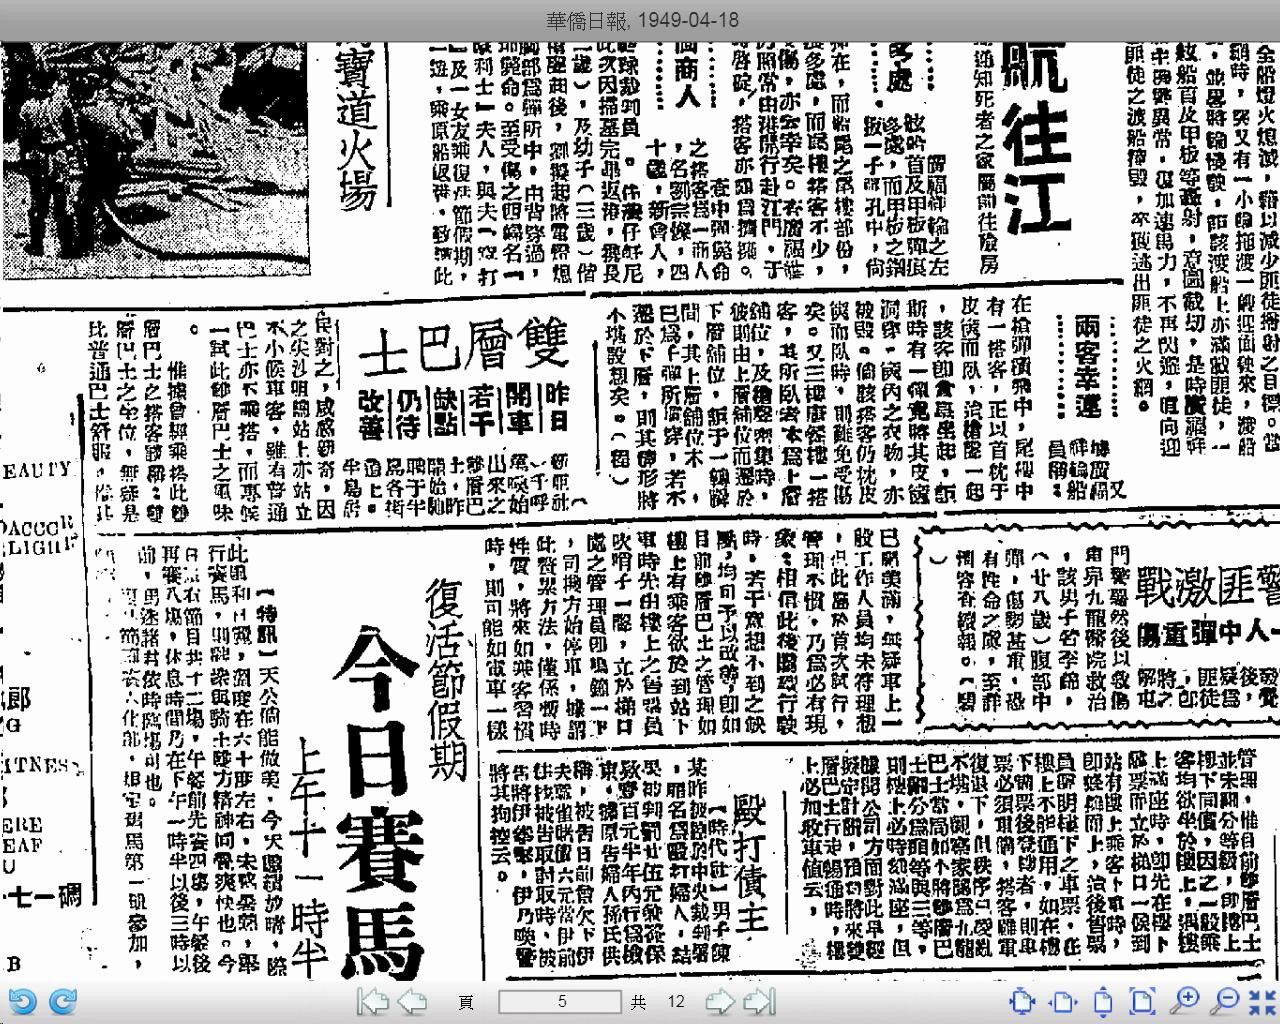 華僑日報 1949-04-18 (1).jpg